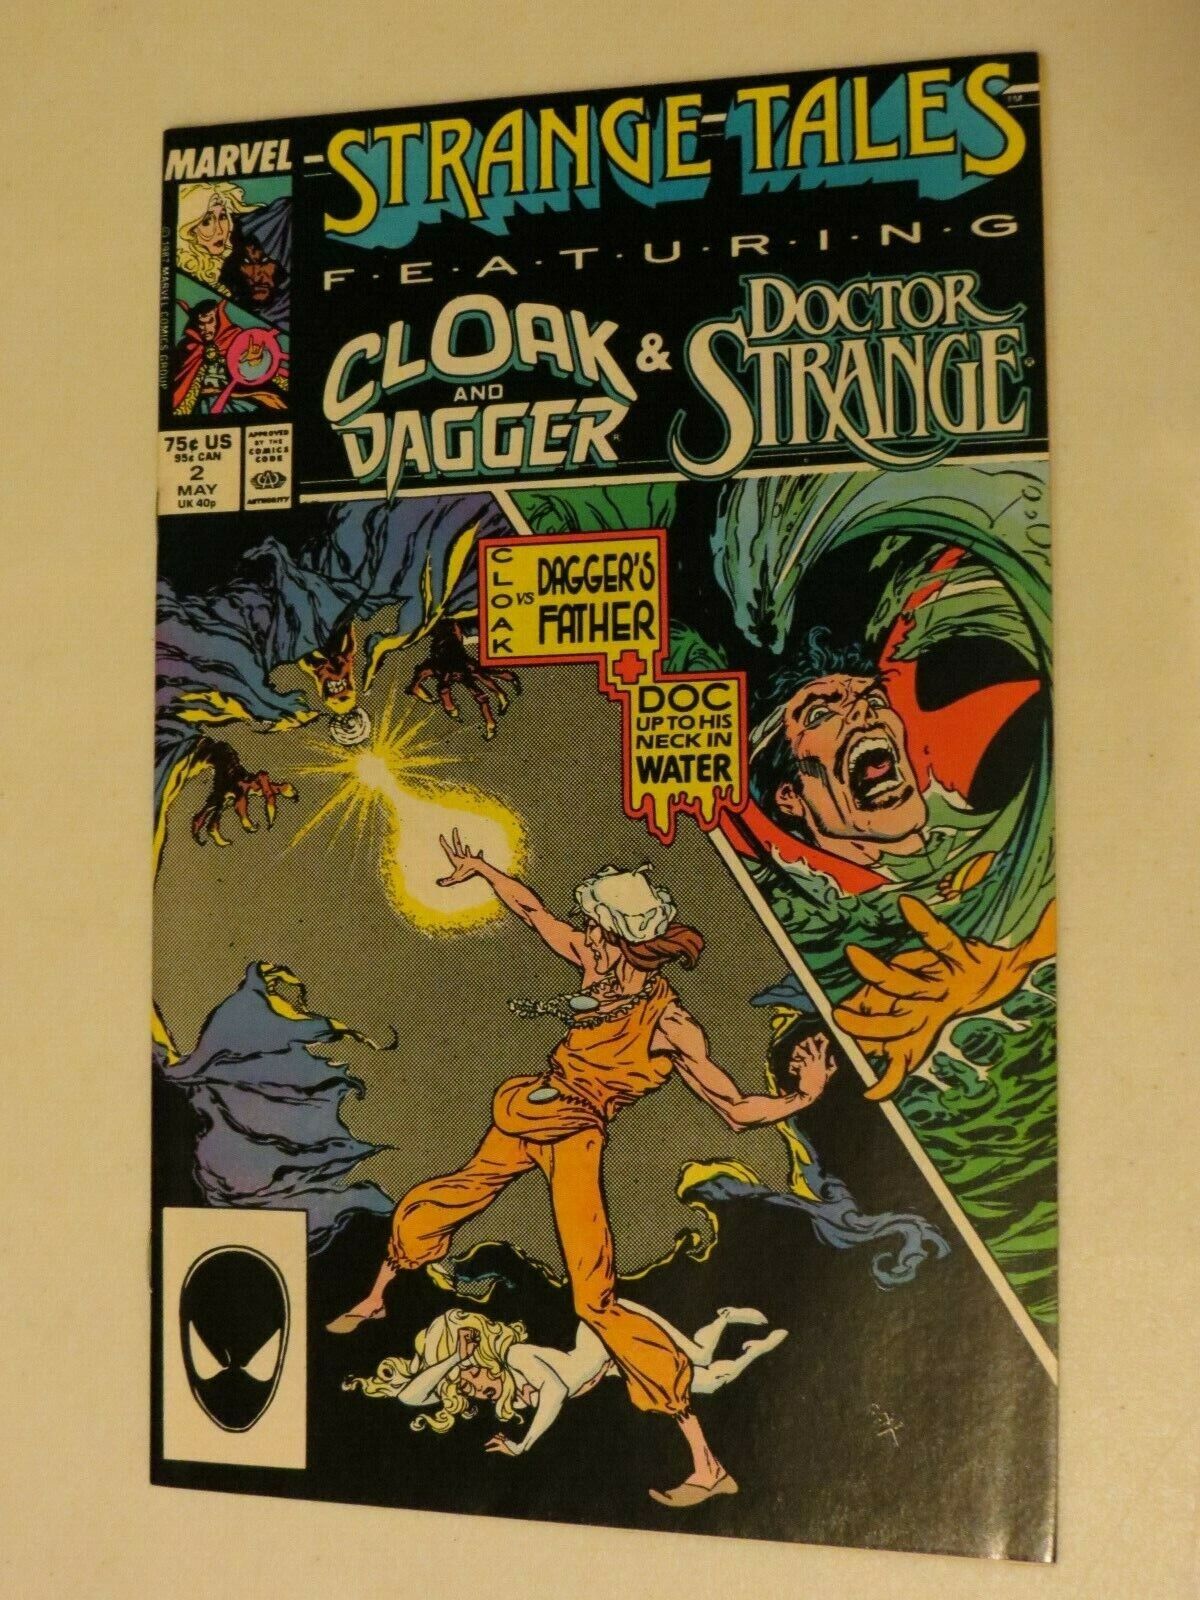 Strange-Tales #2 Cloak and Dagger & Doctor Strange for Sale - ScienceAGogo